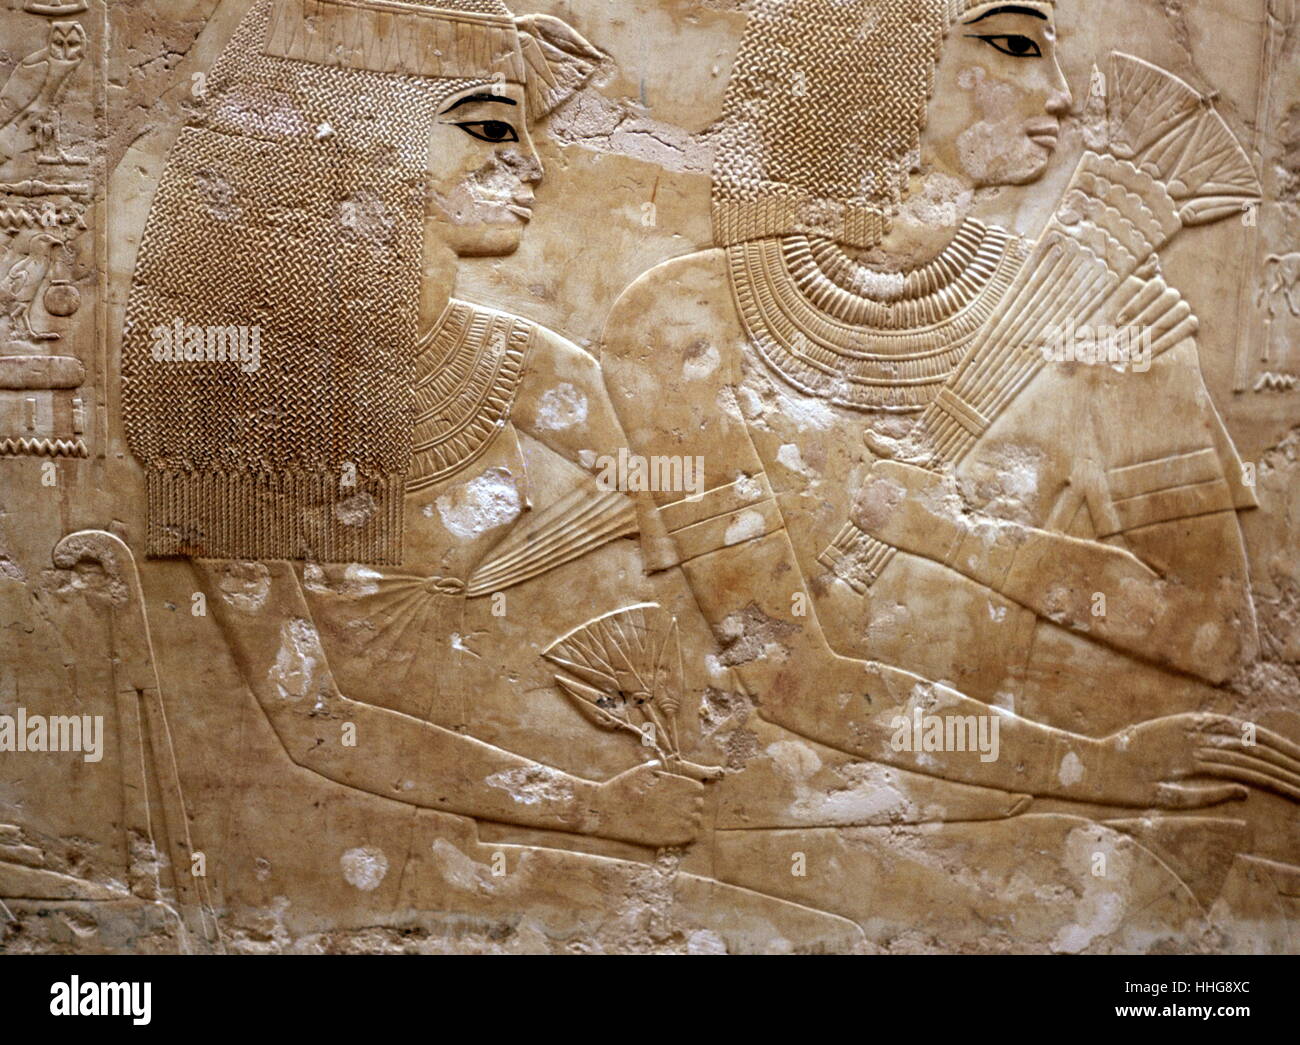 Relief représentant Ramosé et son épouse, de la tombe de Ramosé sur la rive ouest de Louxor. Ramosé était gouverneur de Thèbes et vizir sous les règnes d'Aménophis III qui a régné sur l'Égypte à partir de 1391-1353 ou 1388-1351 Aménophis IV BC et qui a changé son nom à Akhénaton et régna de 1353-1336 ou 1351- 1334 BC. Thèbes est le nom les Grecs ont donné à Waset, l'ancienne capitale de l'Égypte Banque D'Images